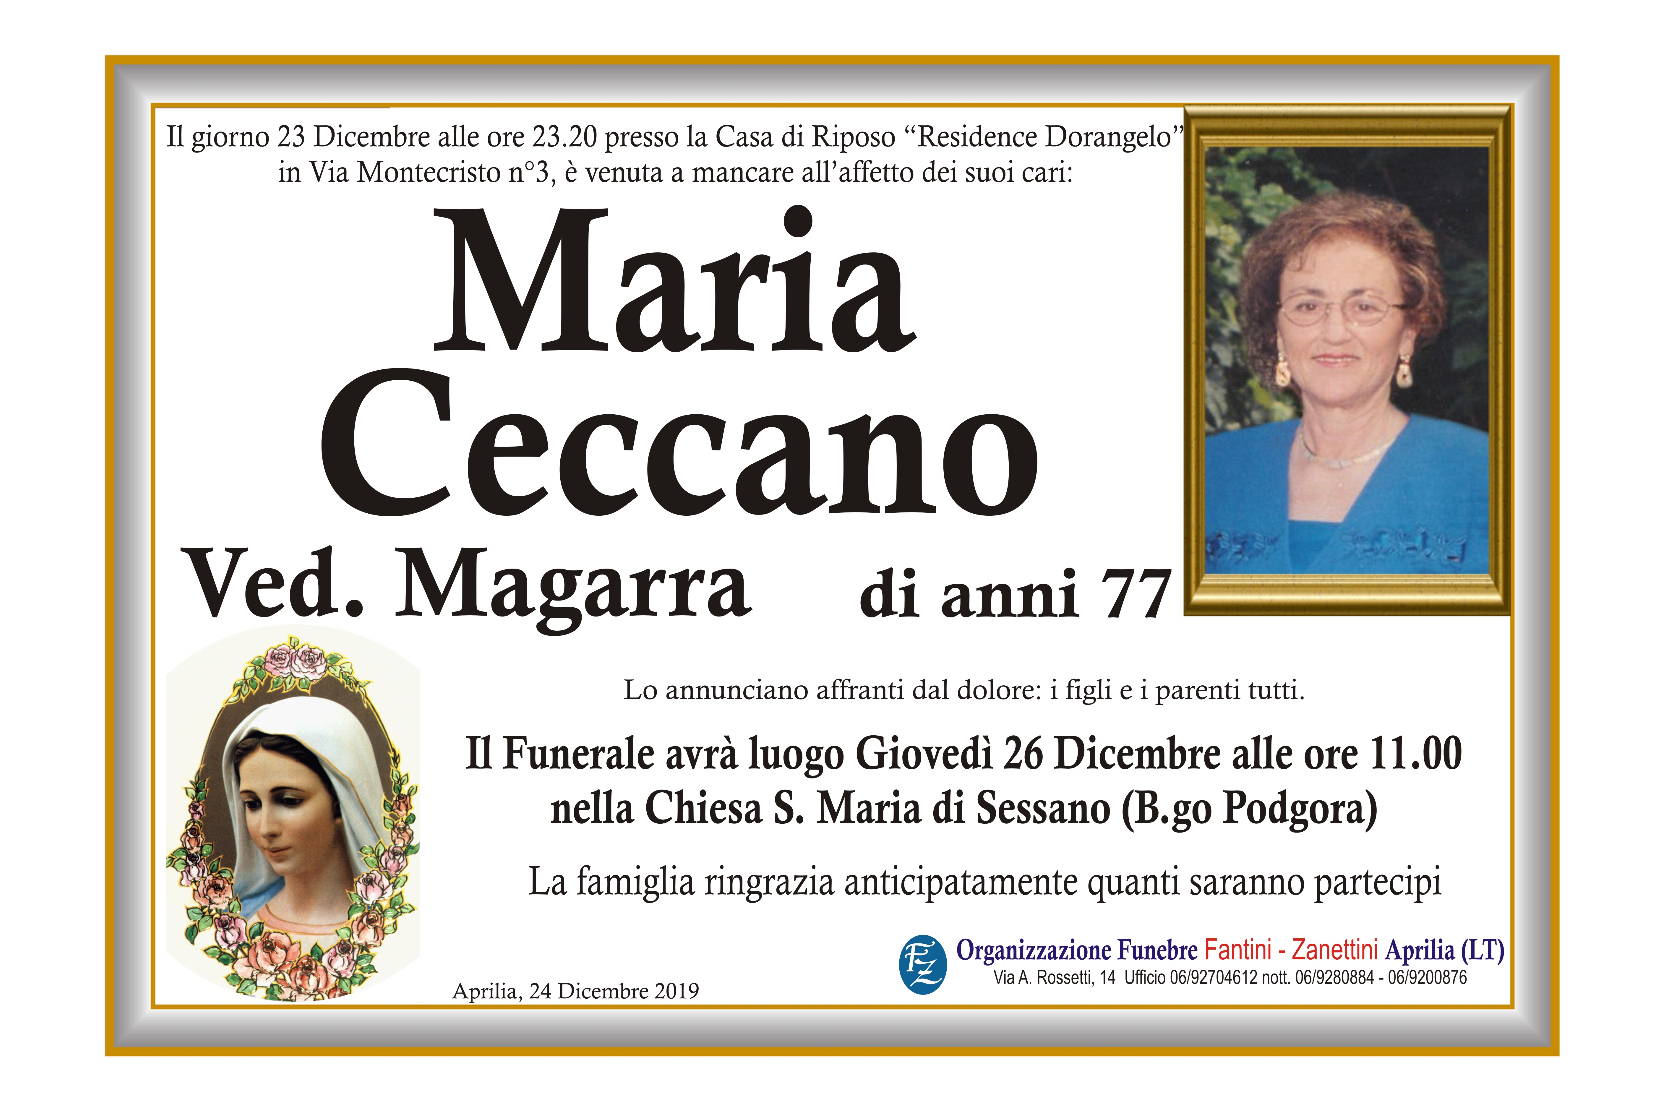 Maria Ceccano